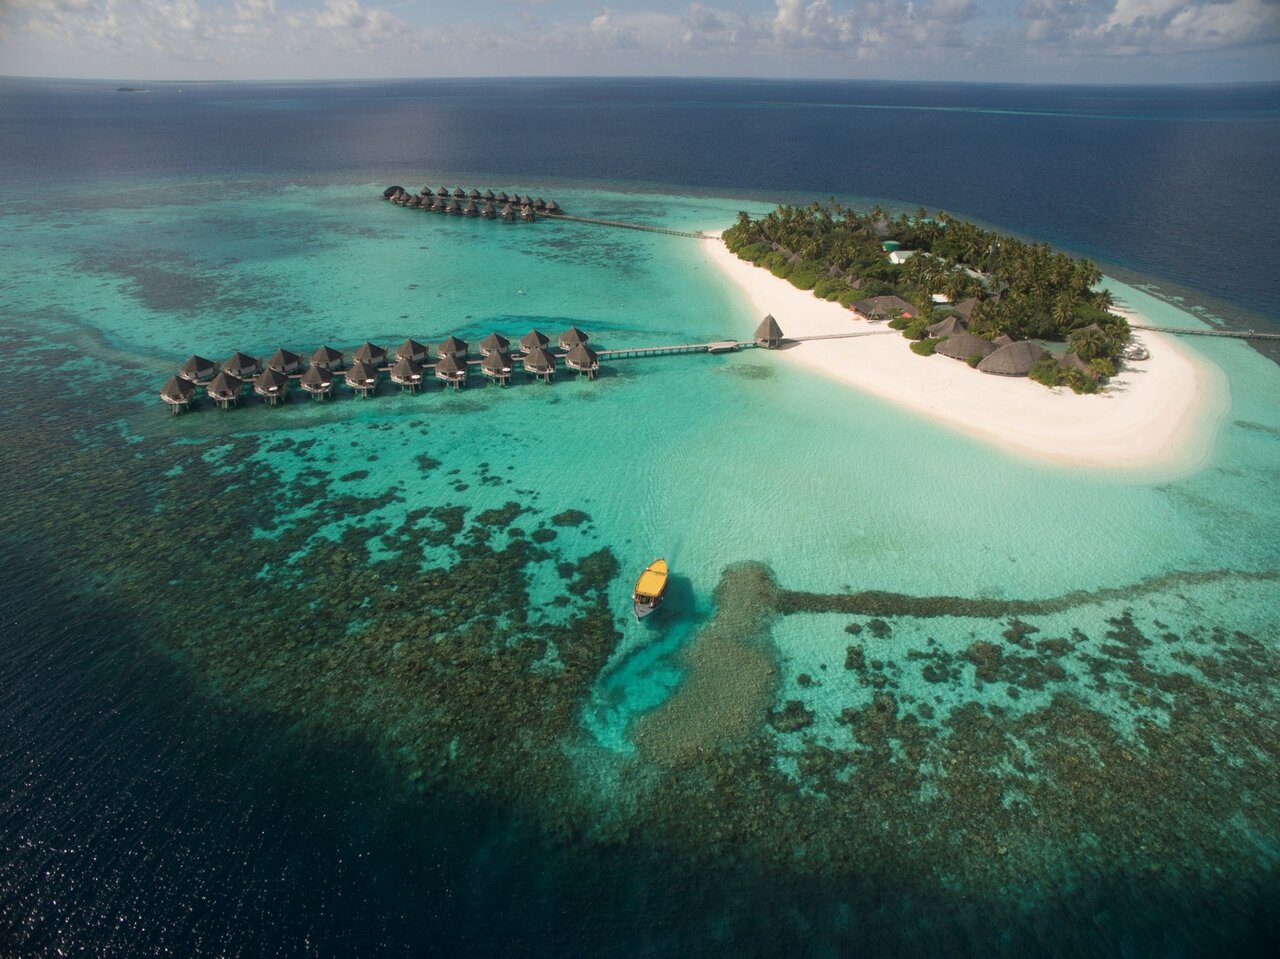 MALDIVE